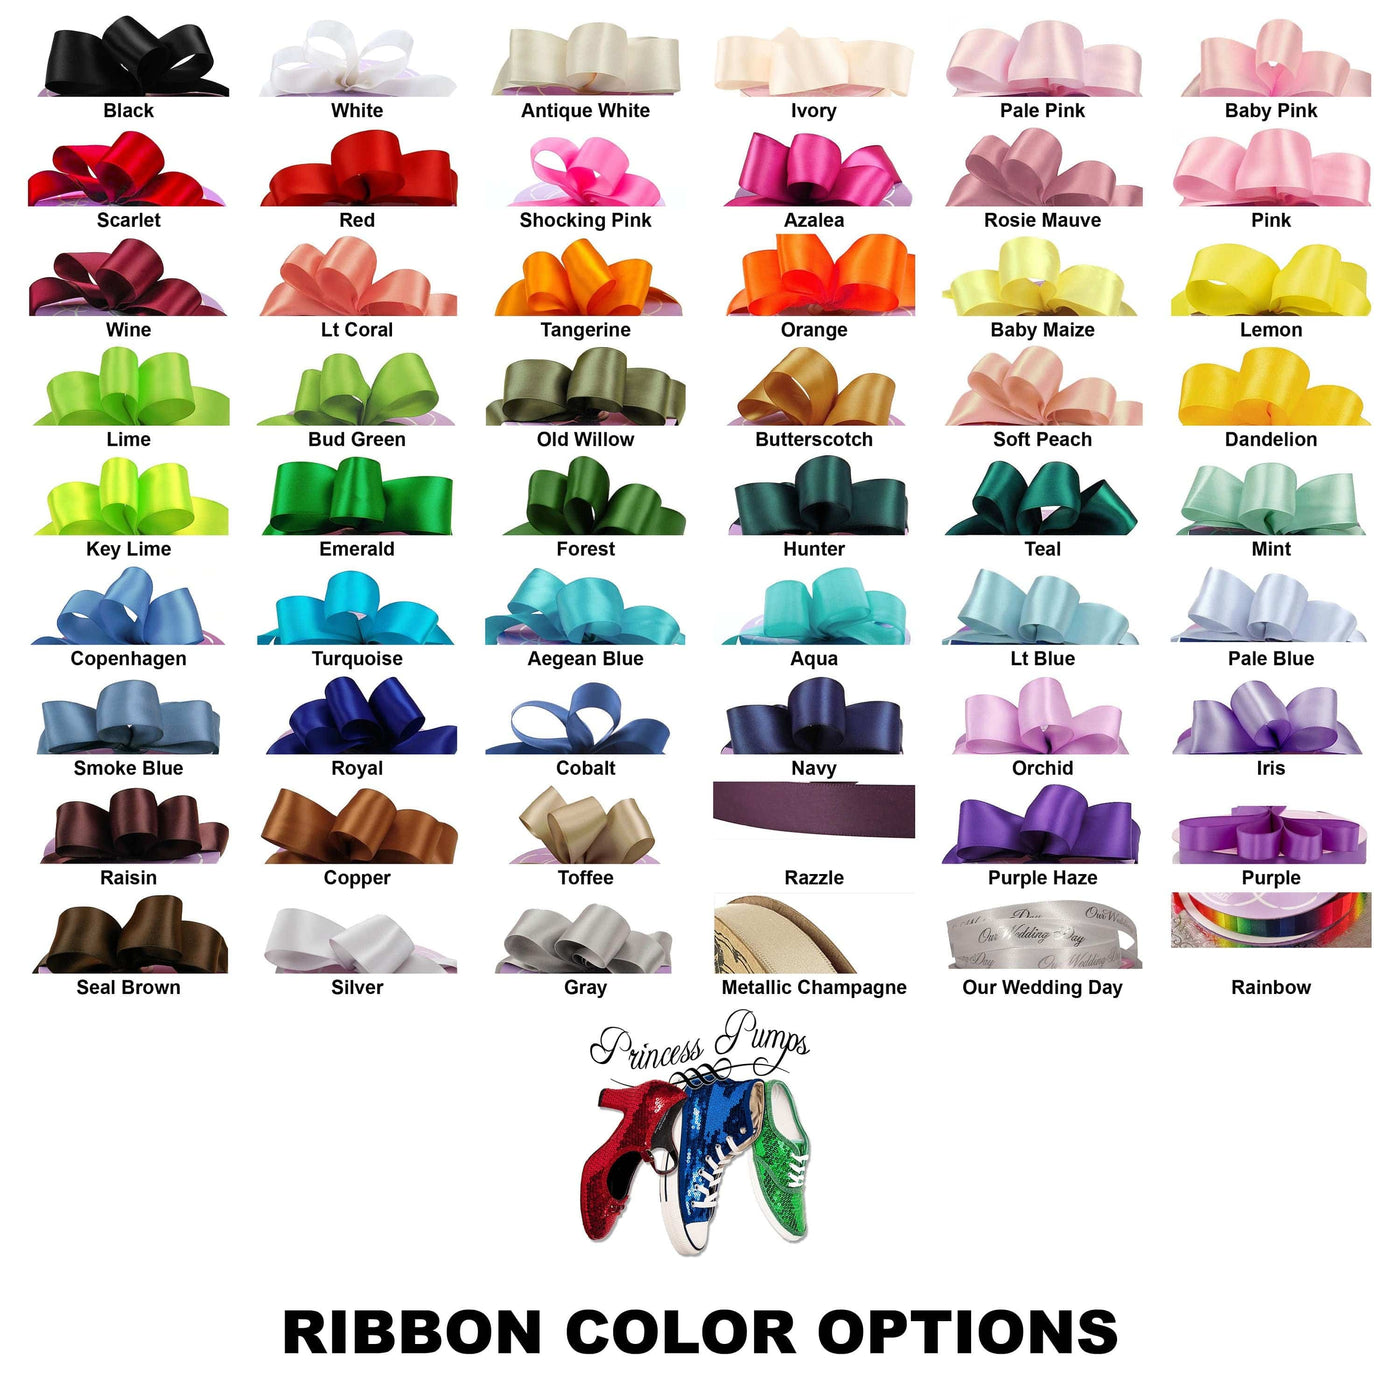 Satin Ribbon 5/8" Premium Quality Shoelaces - 48" Inch Length Surprise Me!